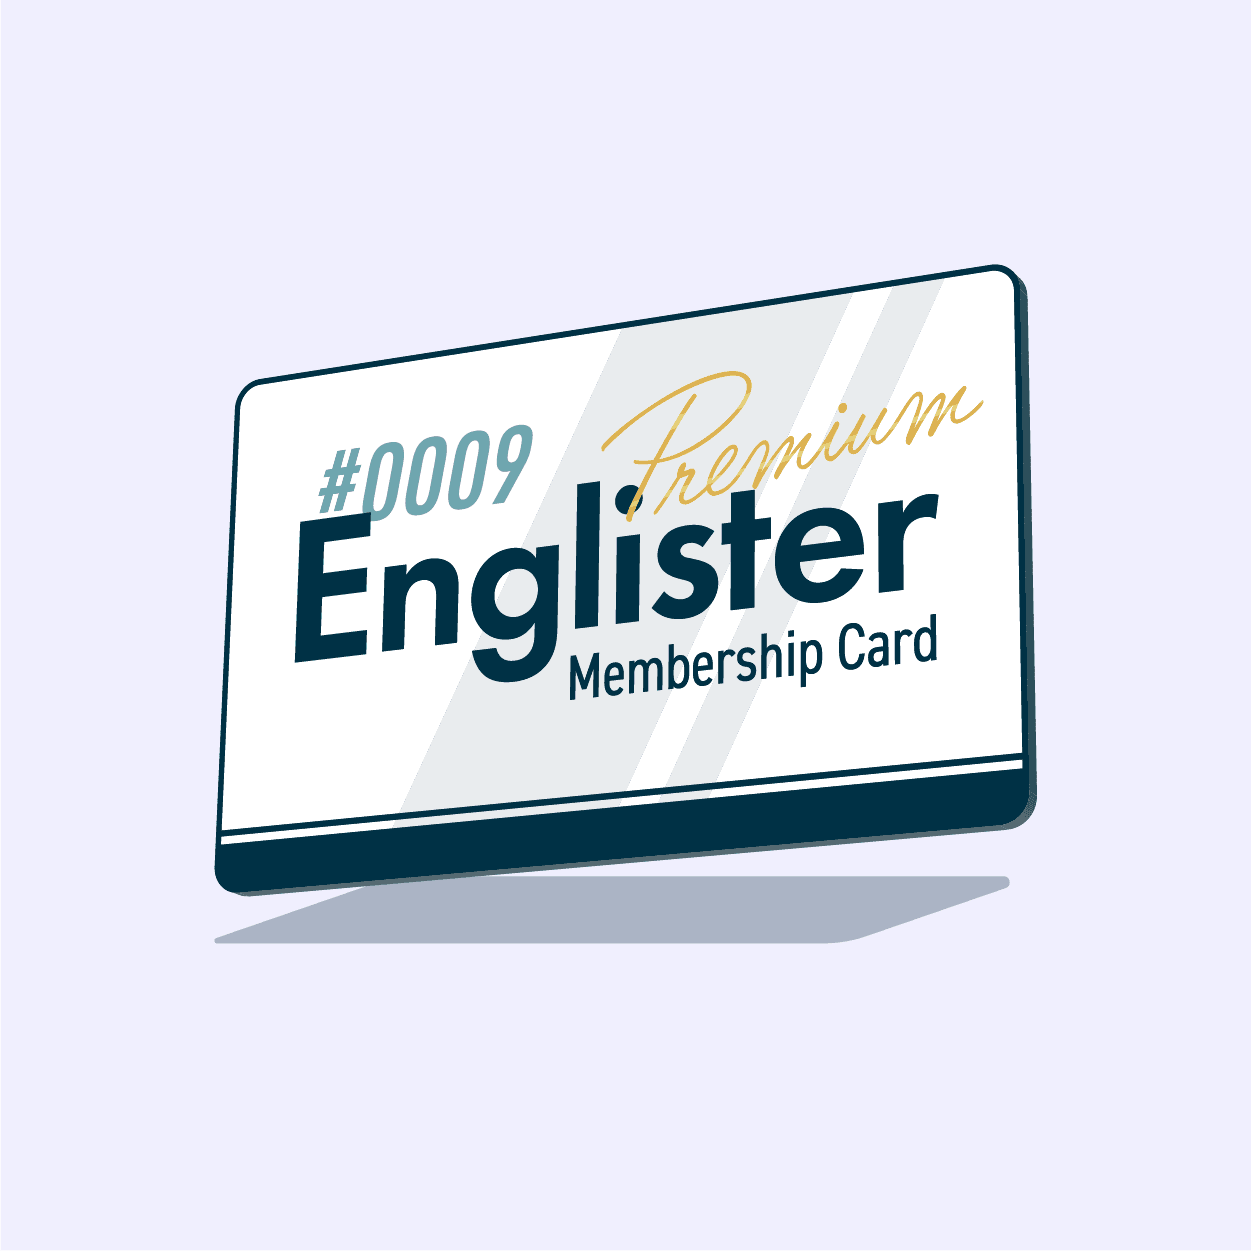 Englister Premium Membership #0009